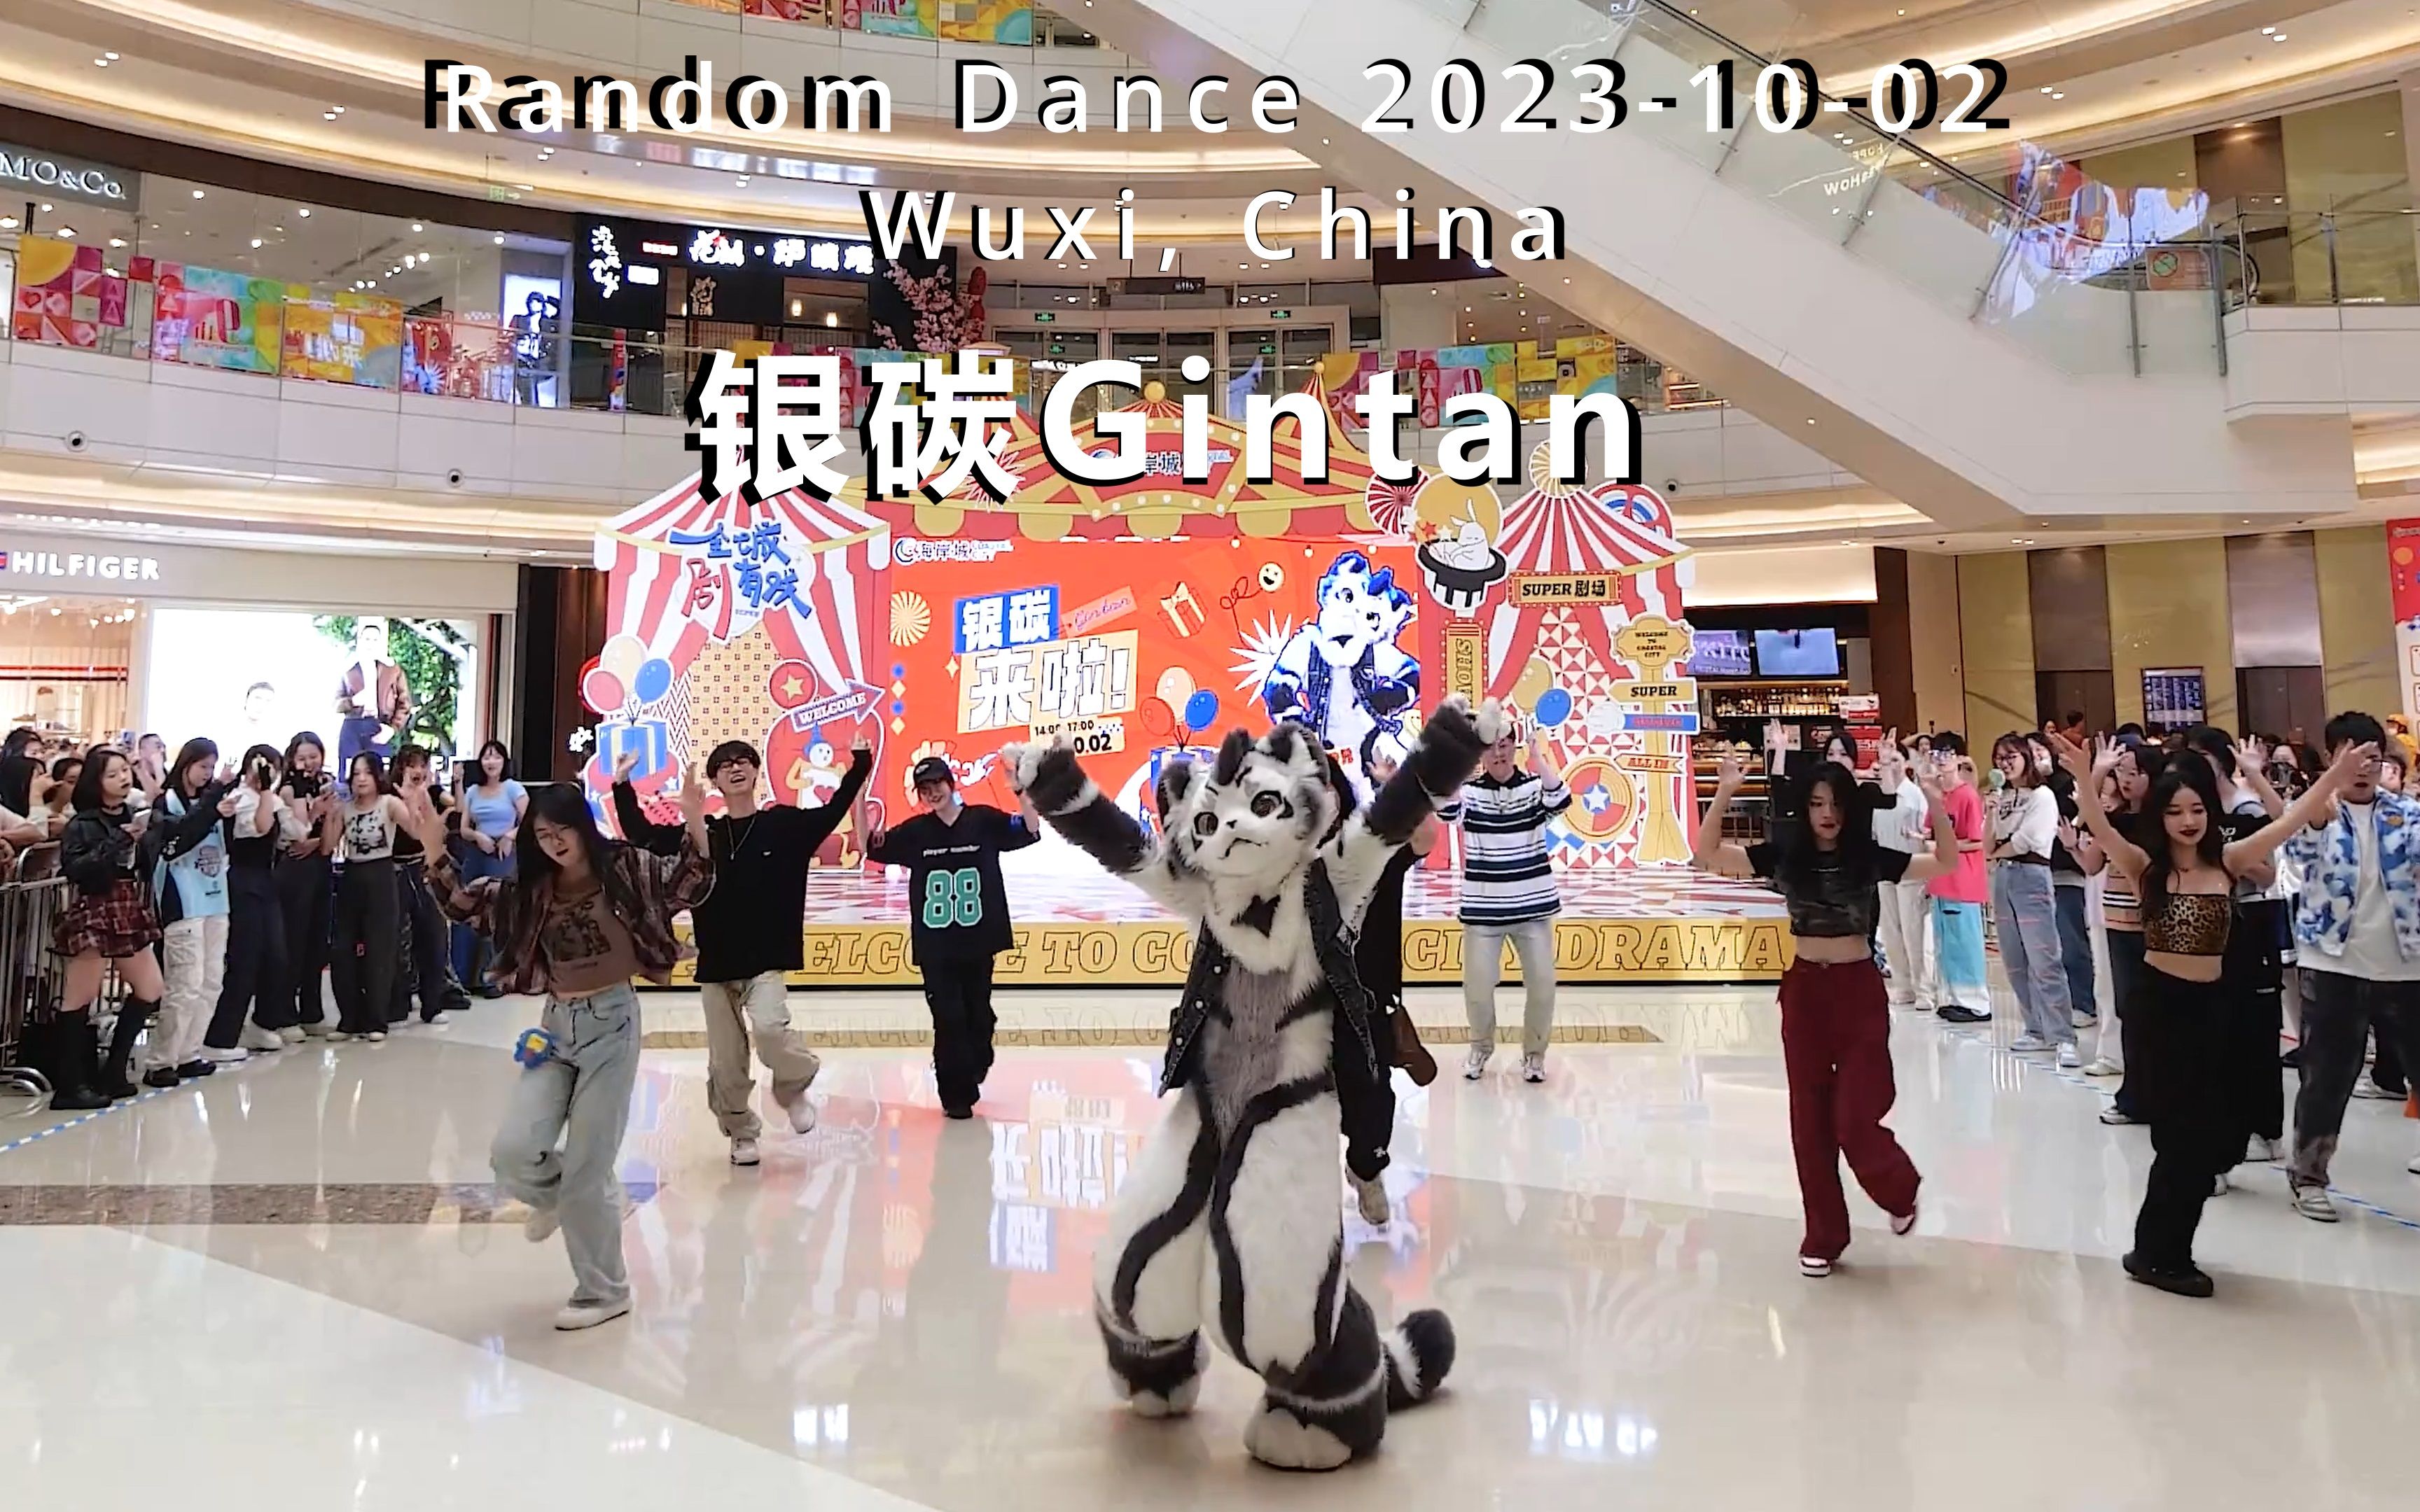 【银碳, 兽装舞蹈】2023年10月2日无锡市的随机舞蹈活动 - 展示银碳Gintan在活动中参与的部分